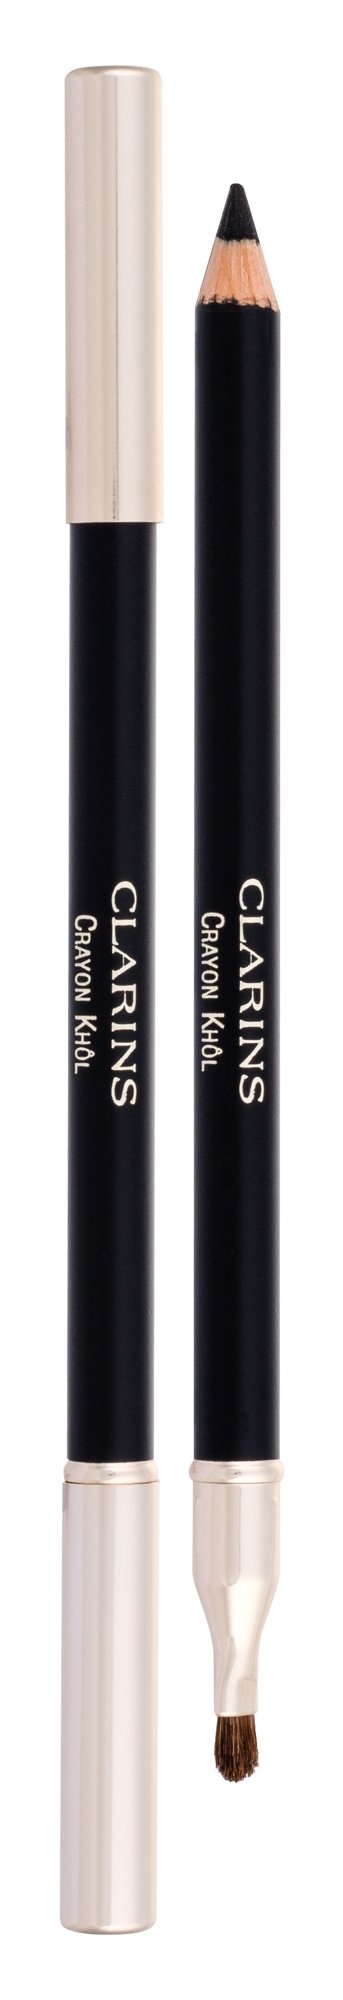 Clarins Long-Lasting Eye Pencil akių pieštukas